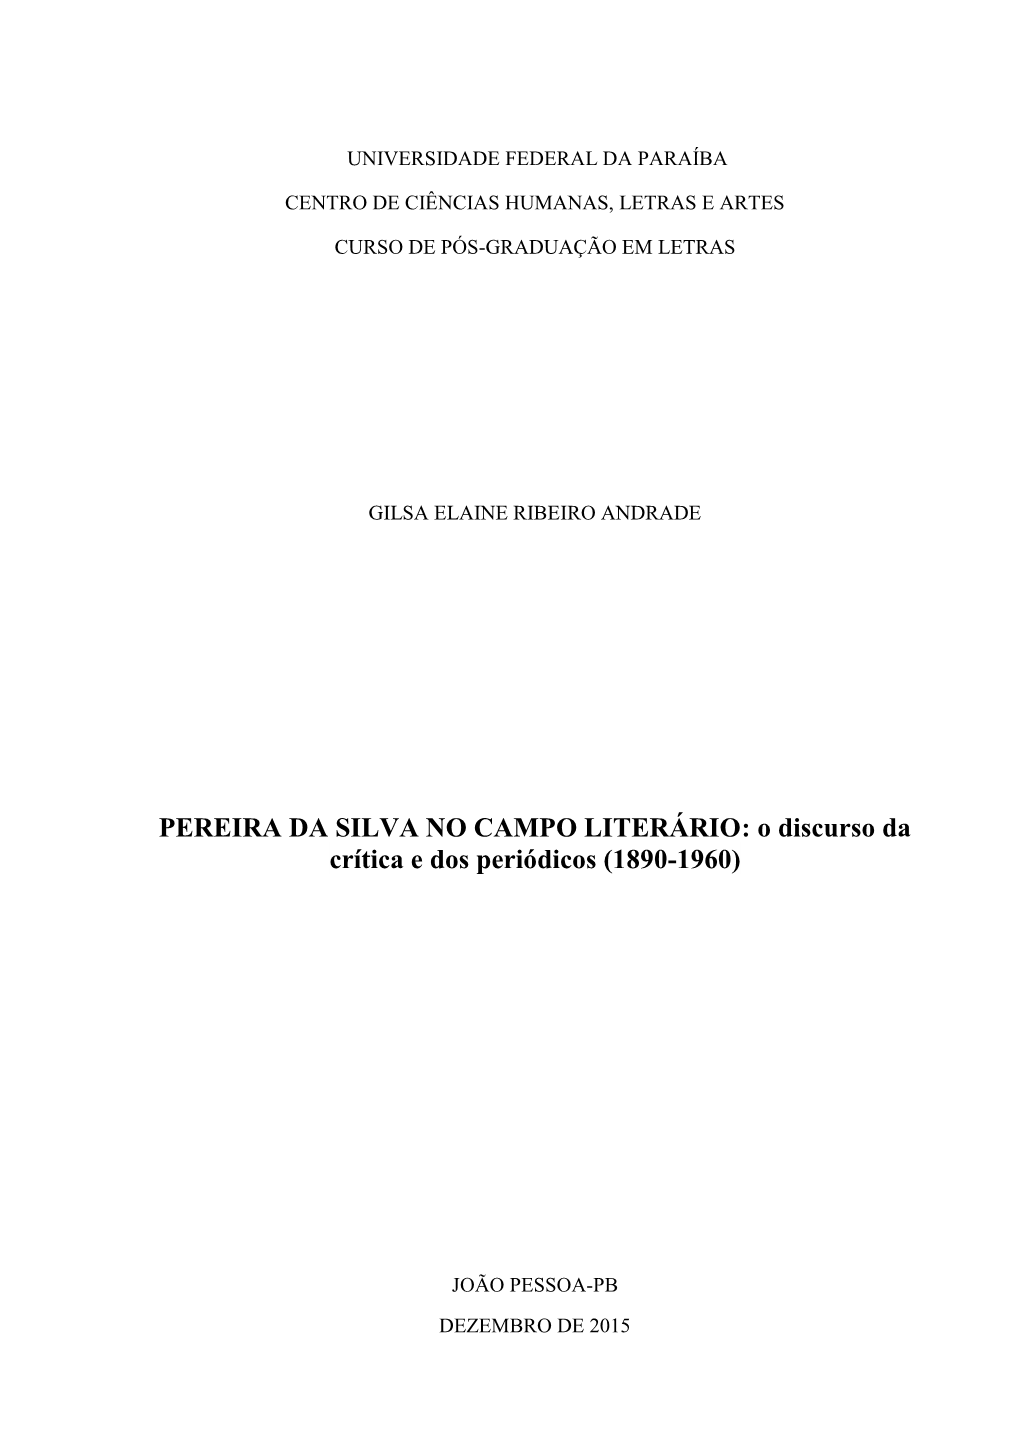 PEREIRA DA SILVA NO CAMPO LITERÁRIO: O Discurso Da Crítica E Dos Periódicos (1890-1960)